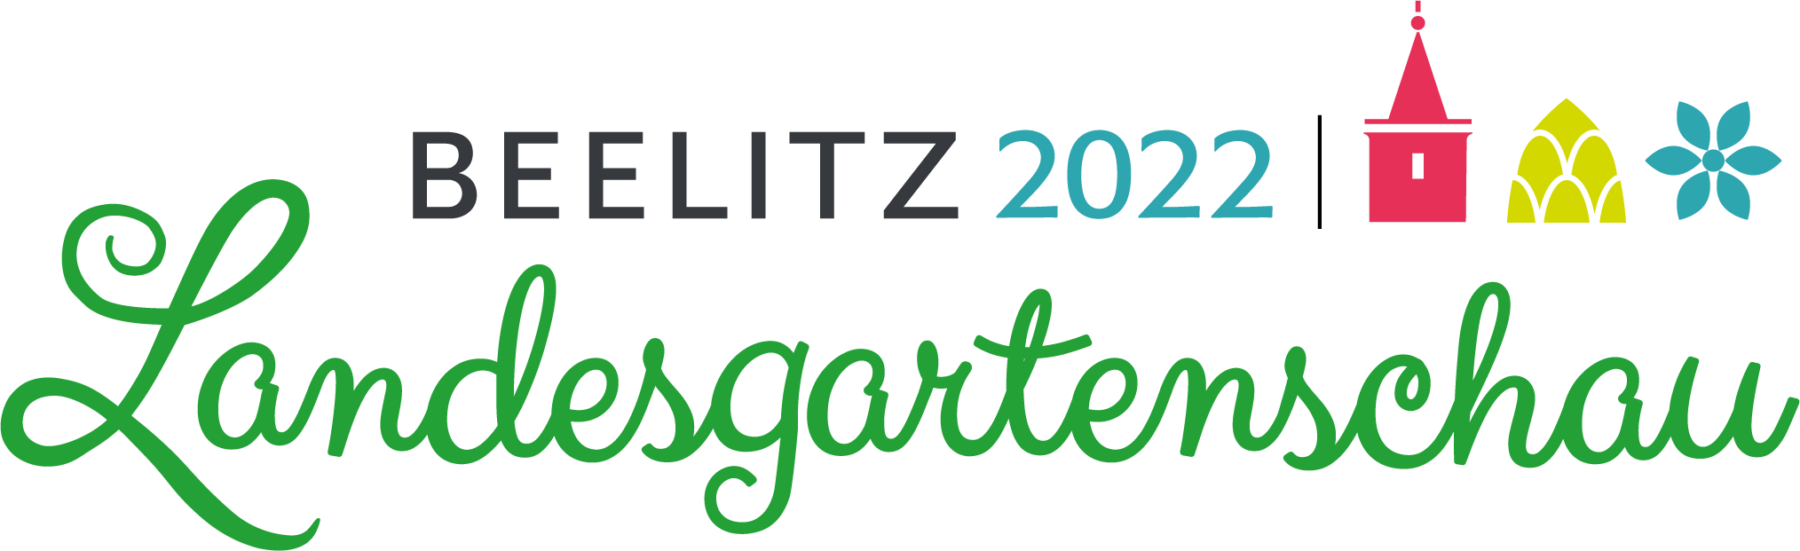 Log der Landesgartenschau Beelitz 2022